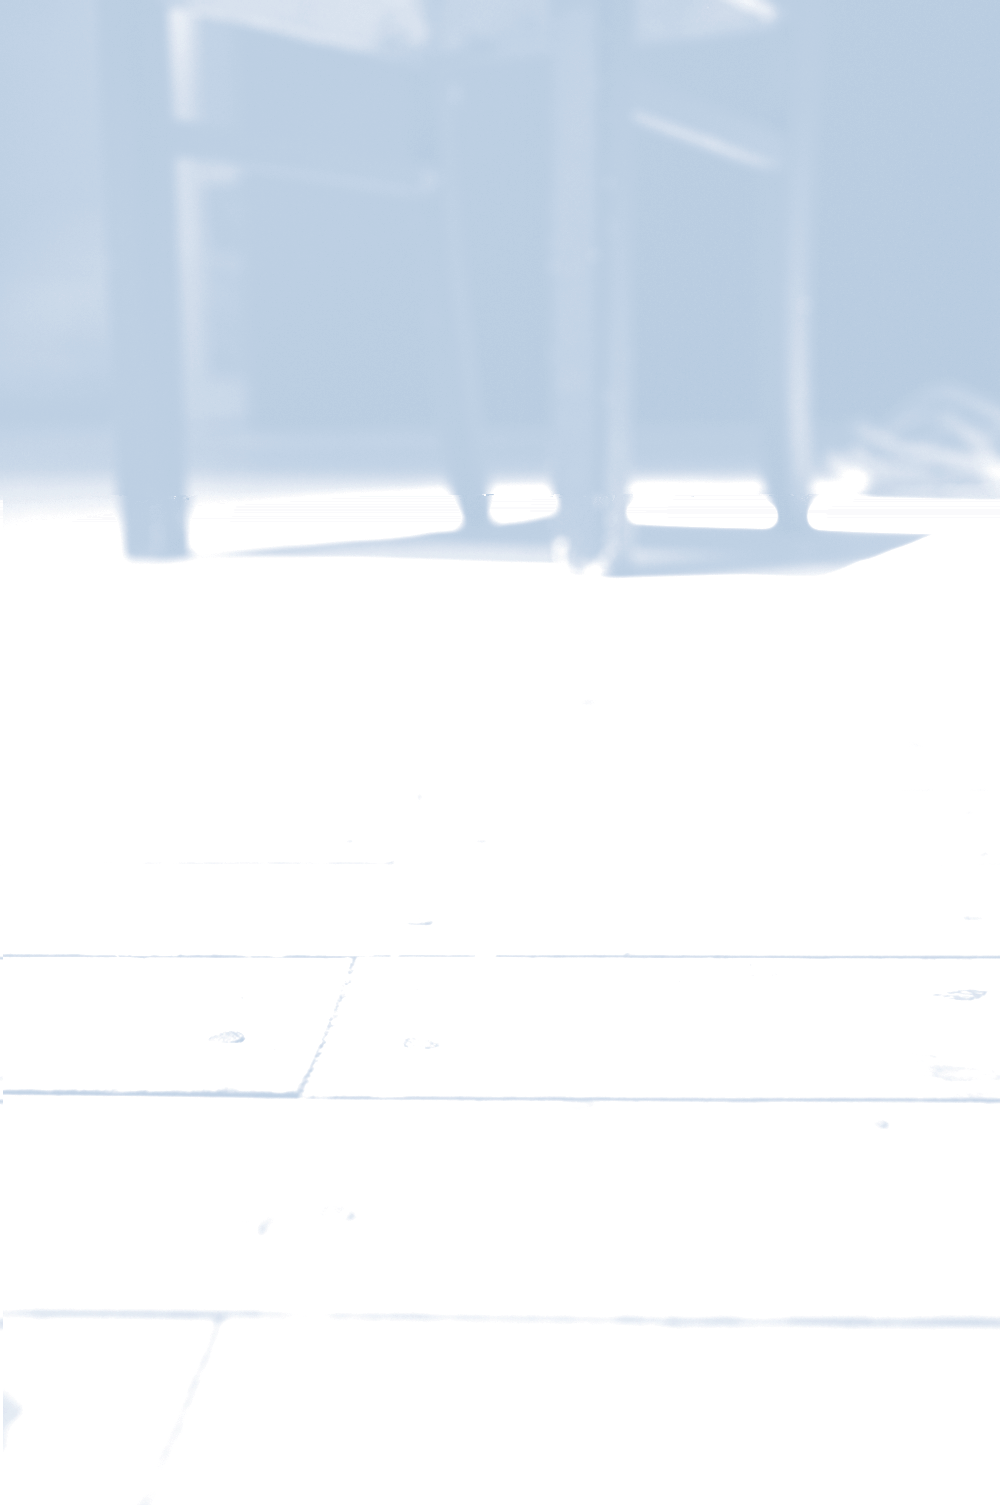 Publikum Britta Delißen-Kirch Uli Frings Michael Göttsche Siegfried Krummreich Sabine Lüer Lilo Maaß Marlies Preuß Barbara Stöcker Dirk Volpert November 2000 James Saunders Penelope hat eben ihren